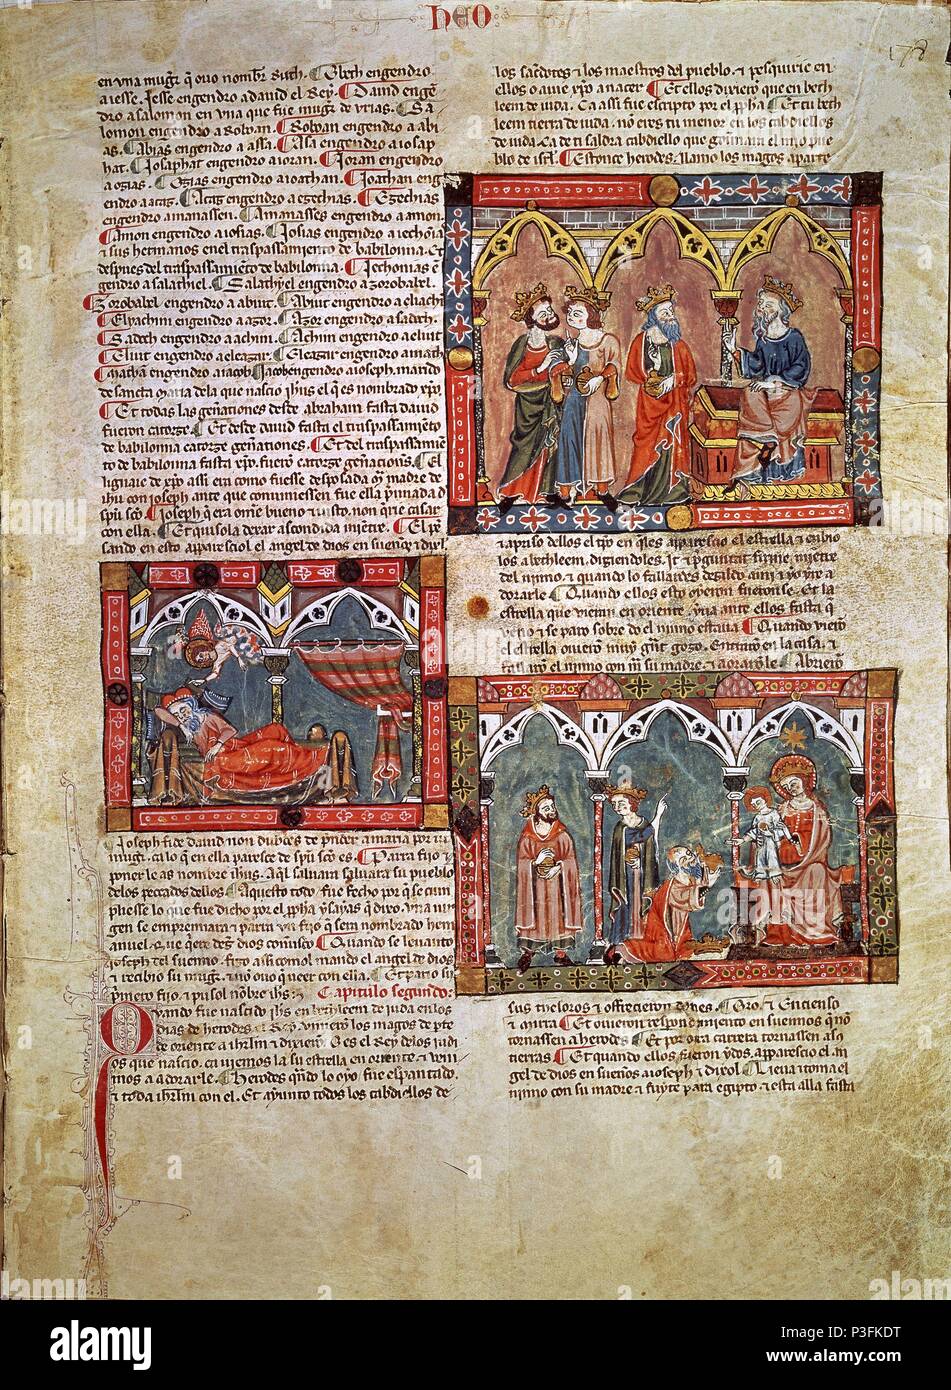 HISTORIA GENERAL DE ALFONSO X - HERODES Y LOS MAGOS- REVELACION EN SUEÑOS- EPIFANIA-S XIII. Author: Alfonso X of Castile the Wise (1221-1284). Location: MONASTERIO-BIBLIOTECA-COLECCION, SAN LORENZO DEL ESCORIAL, MADRID, SPAIN. Stock Photo